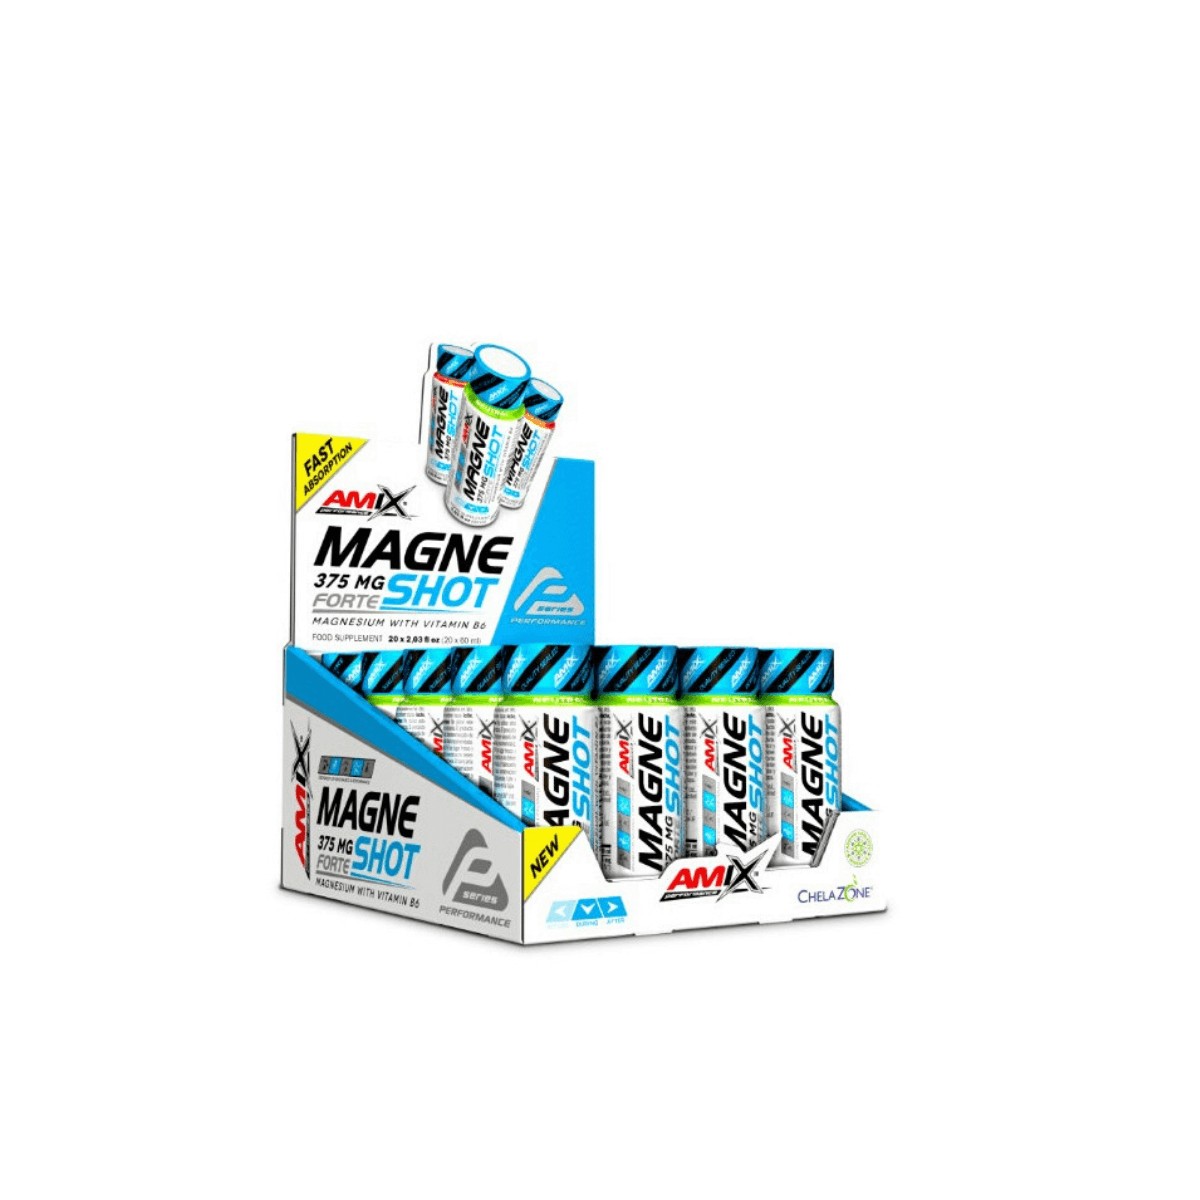 Produkt günstig Kaufen-AMIX MagneShot Forte Griff 1ud. AMIX MagneShot Forte Griff 1ud <![CDATA[AMIX MagneShot Forte 375 mg Mango AMIX Performance MagneShot Forte 375 mg ist ein neues Produkt AMIX PERFORMANCE, ein ultrakonzentriertes Magnesium, das eine Menge von 375 mg Magnesiu